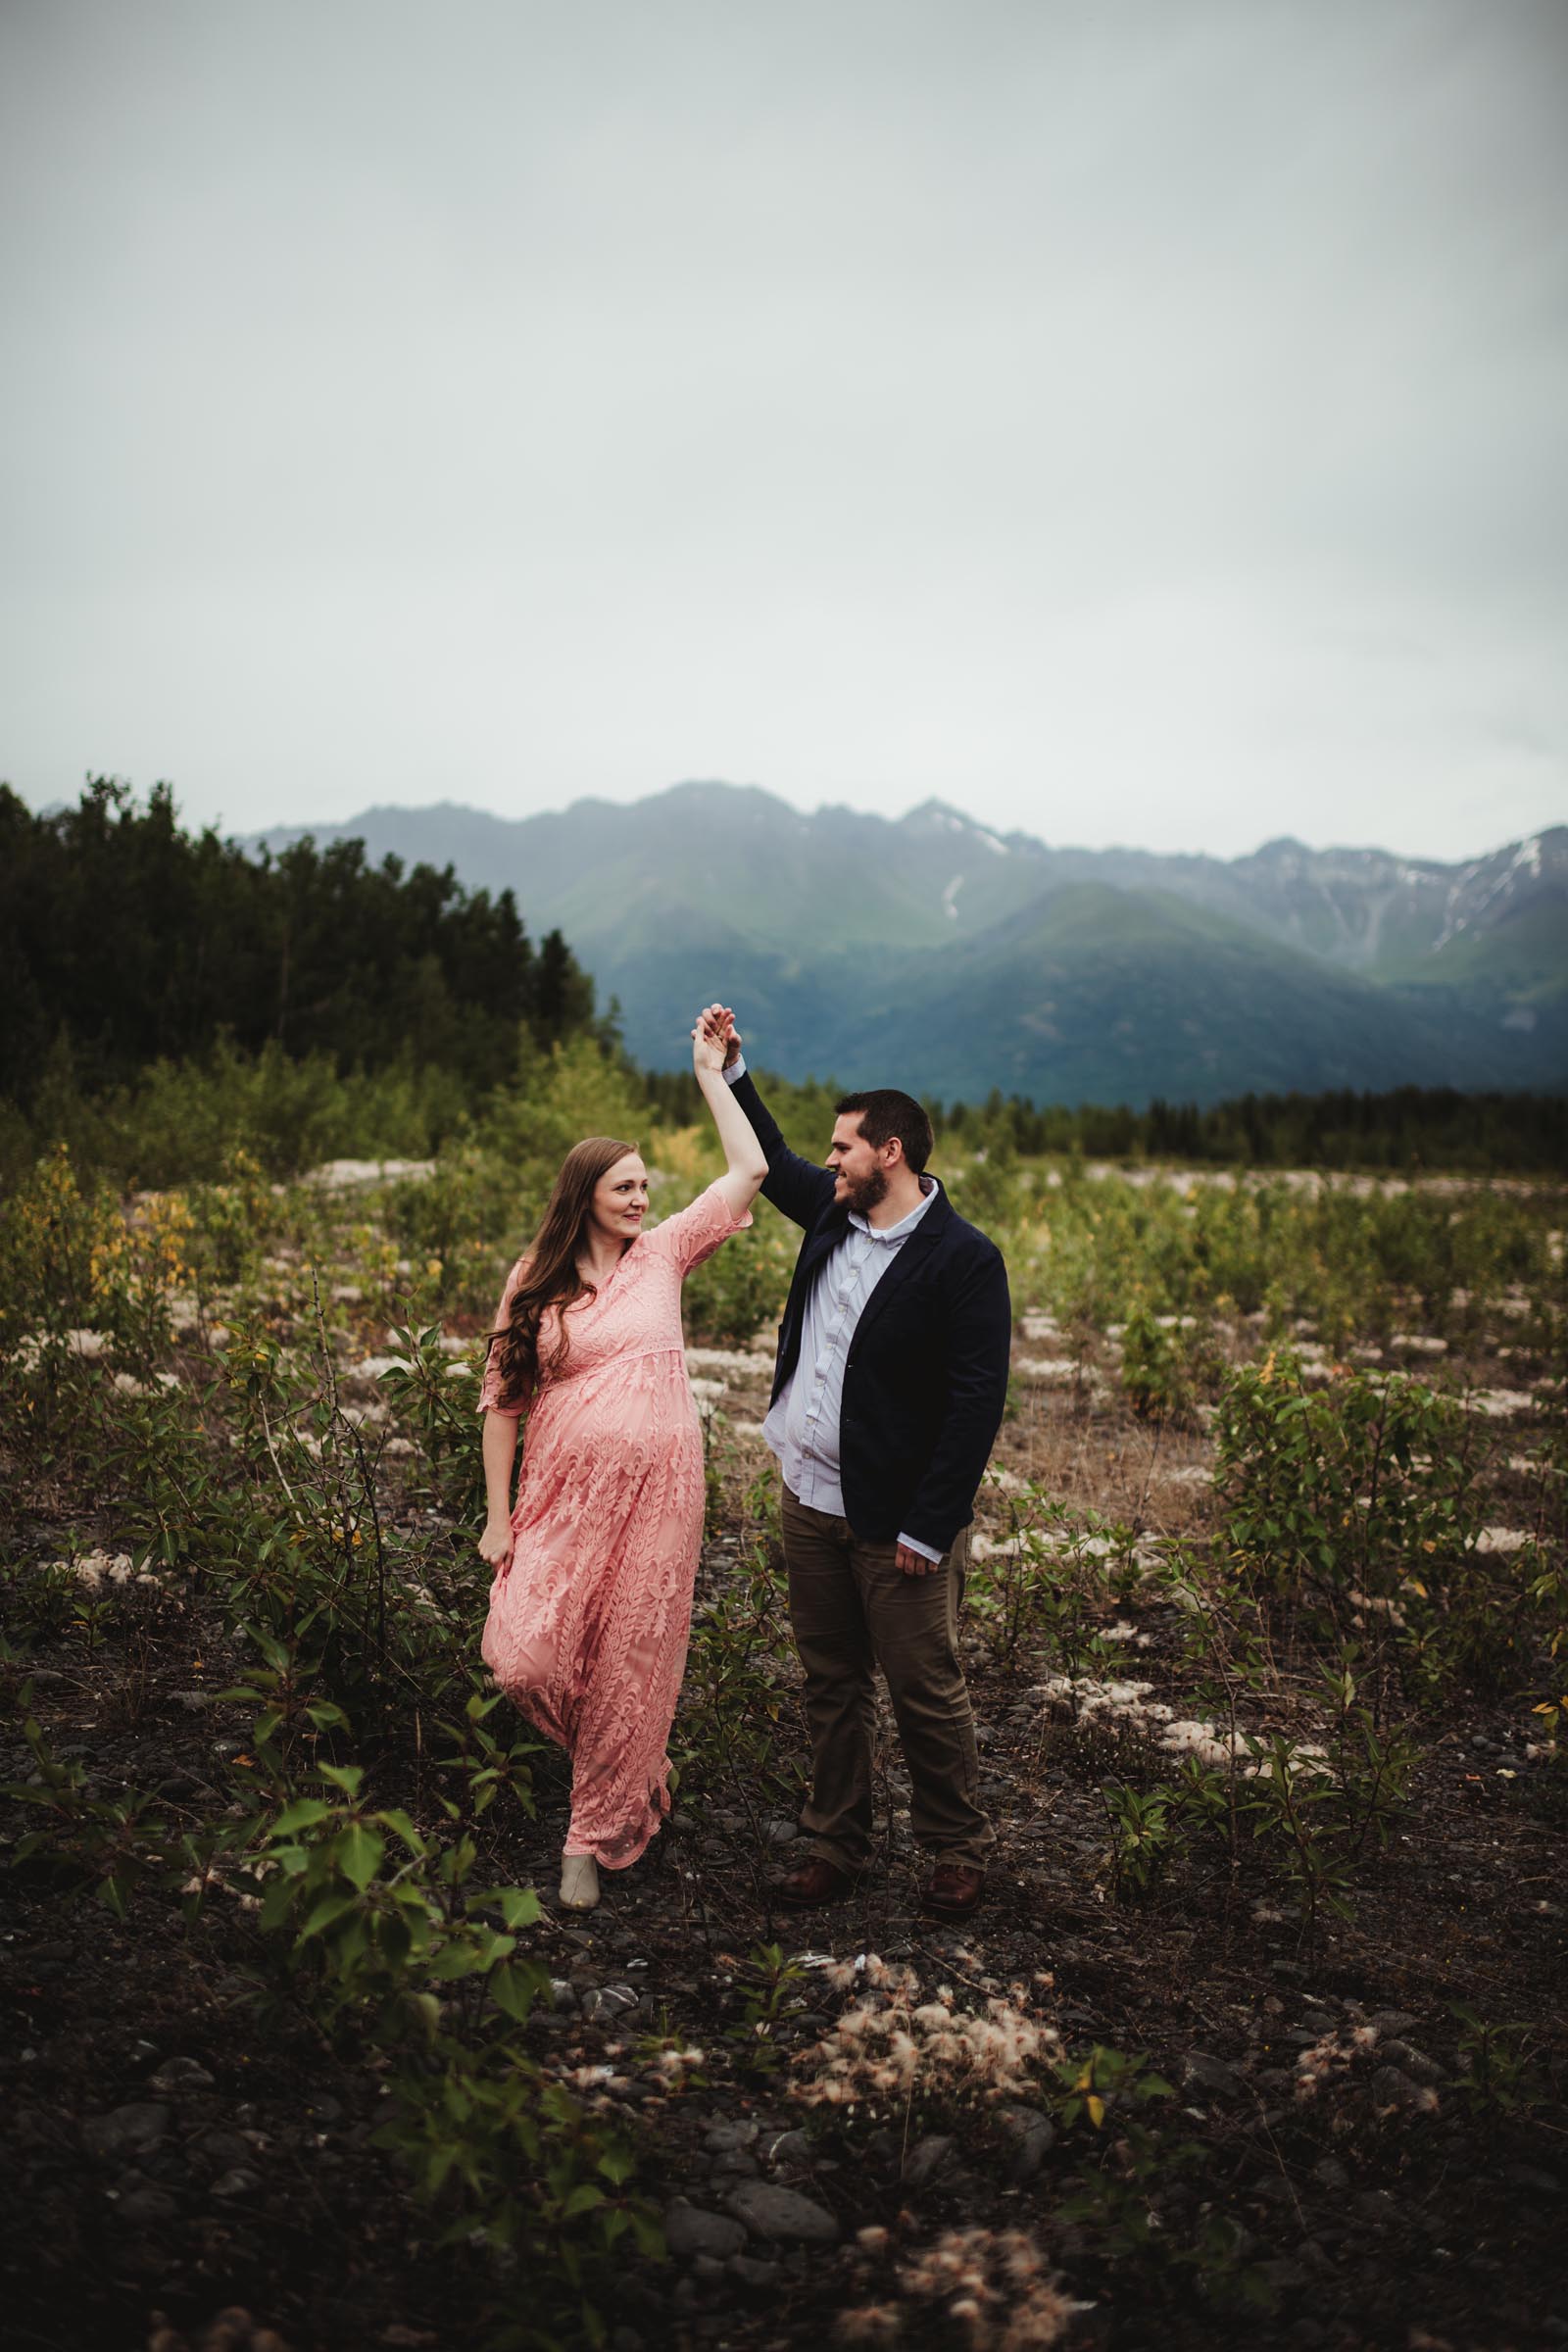 man twirling woman in an Alaskan foothill